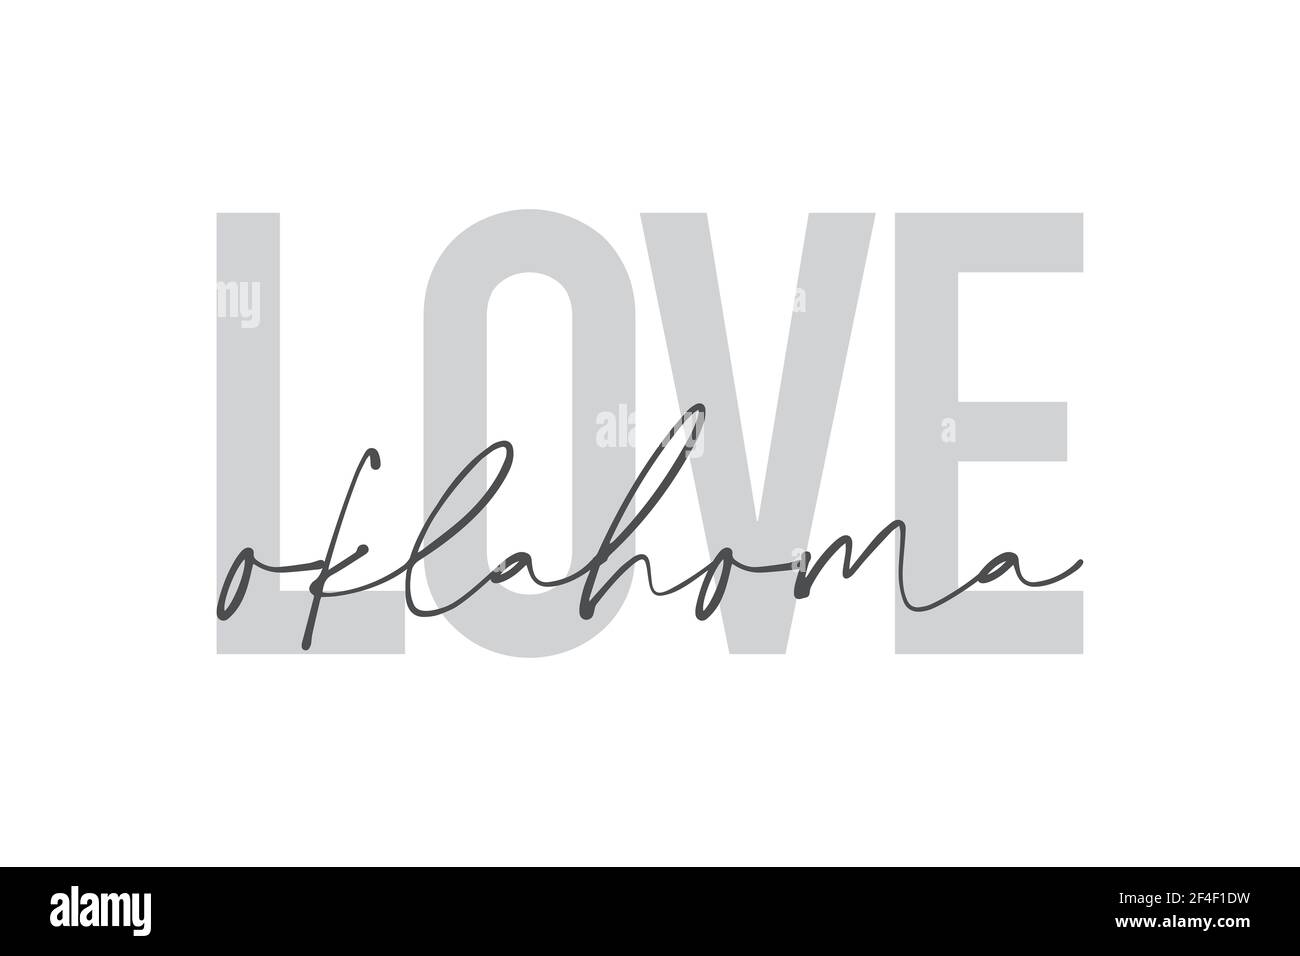 Design grafico moderno, urbano e semplice di un detto 'Love Oklahoma' nei colori grigi. Tipografia trendy, fredda, manoscritta Foto Stock